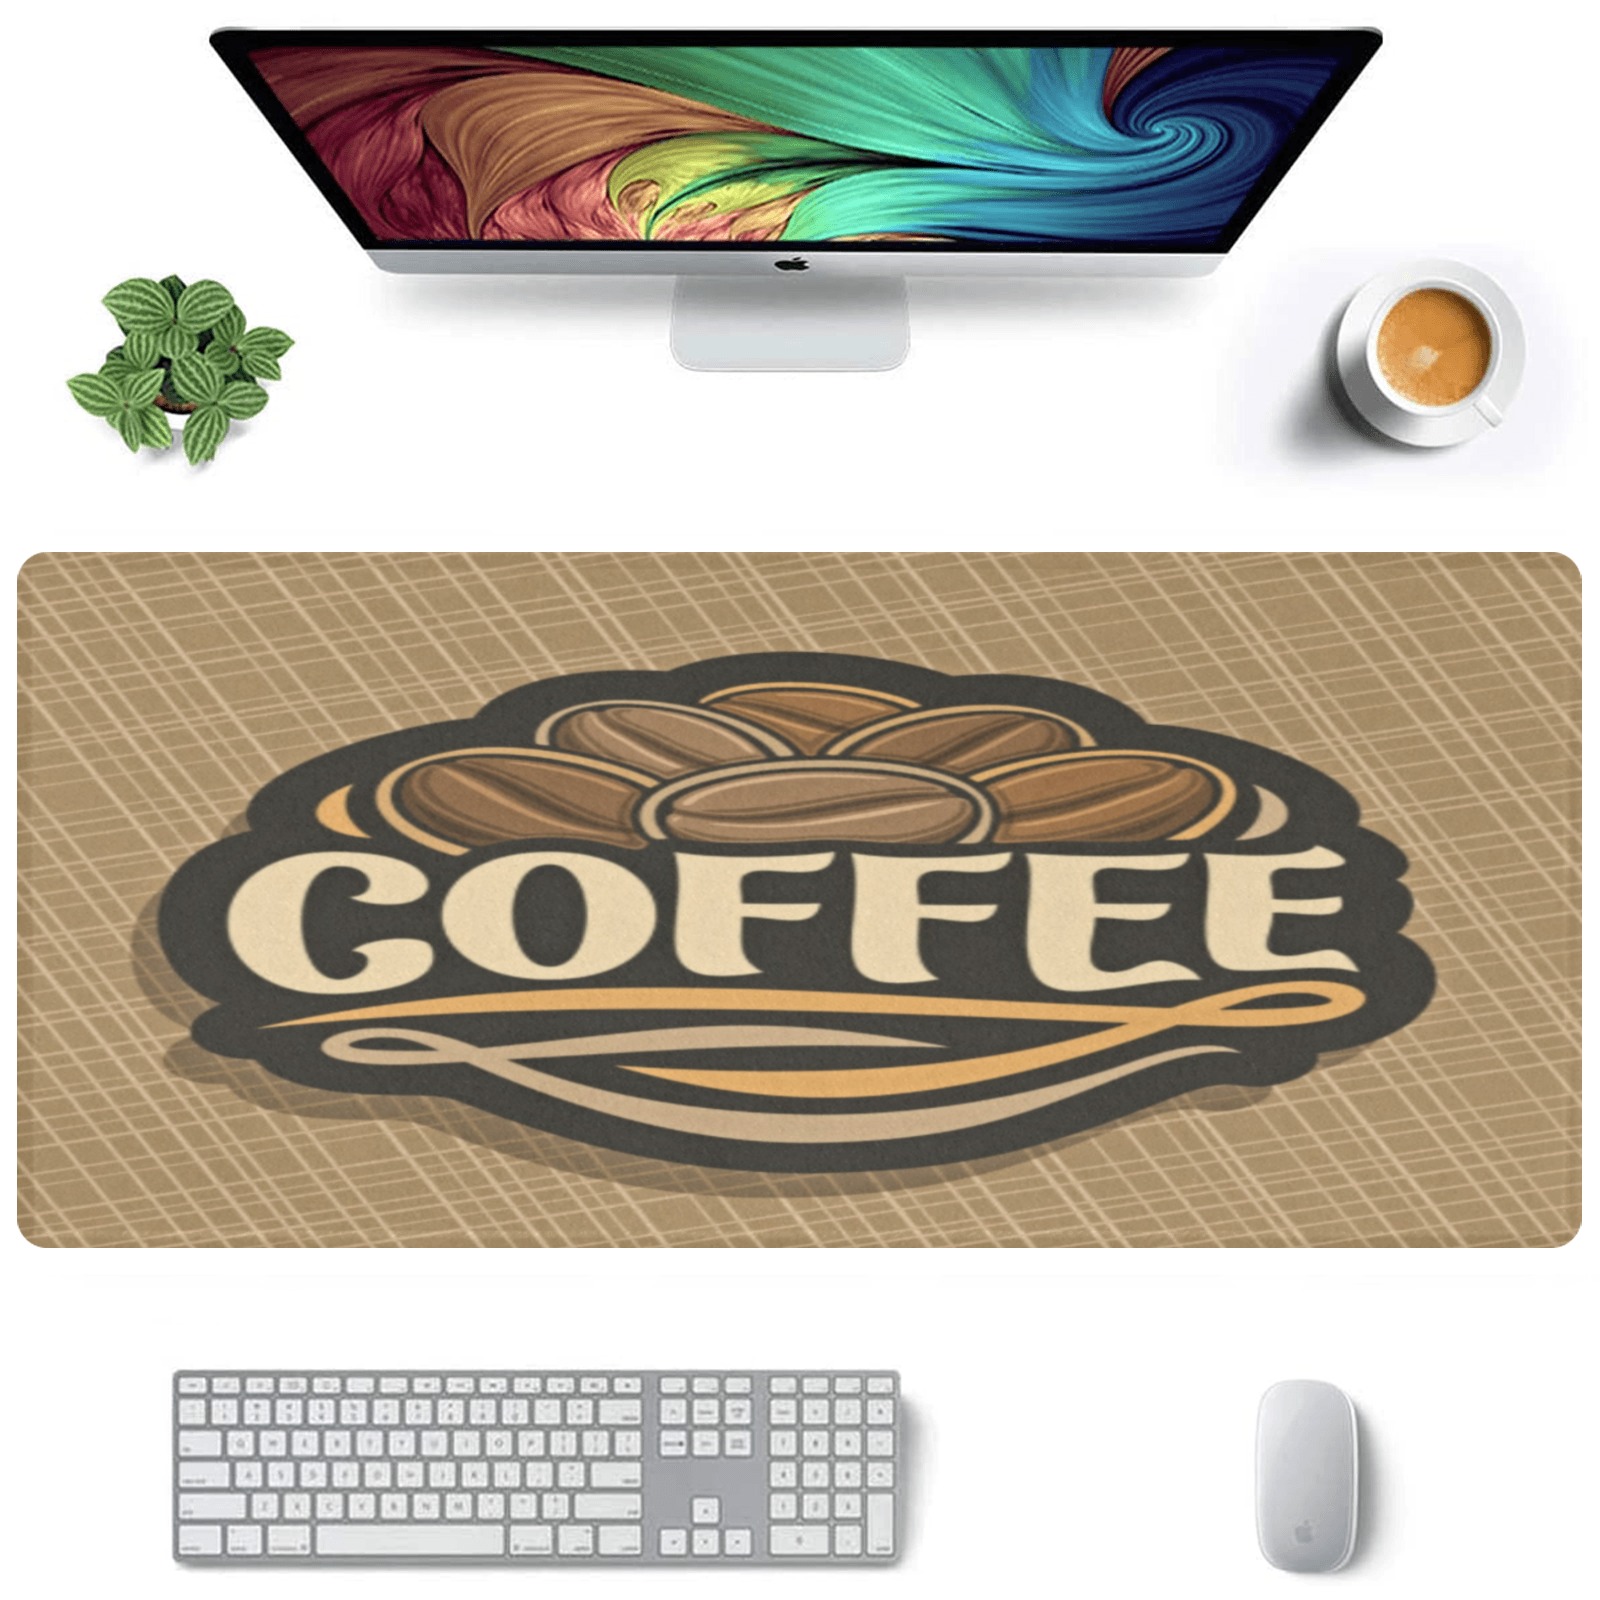 COFFEE Gaming Mousepad (35"x16")